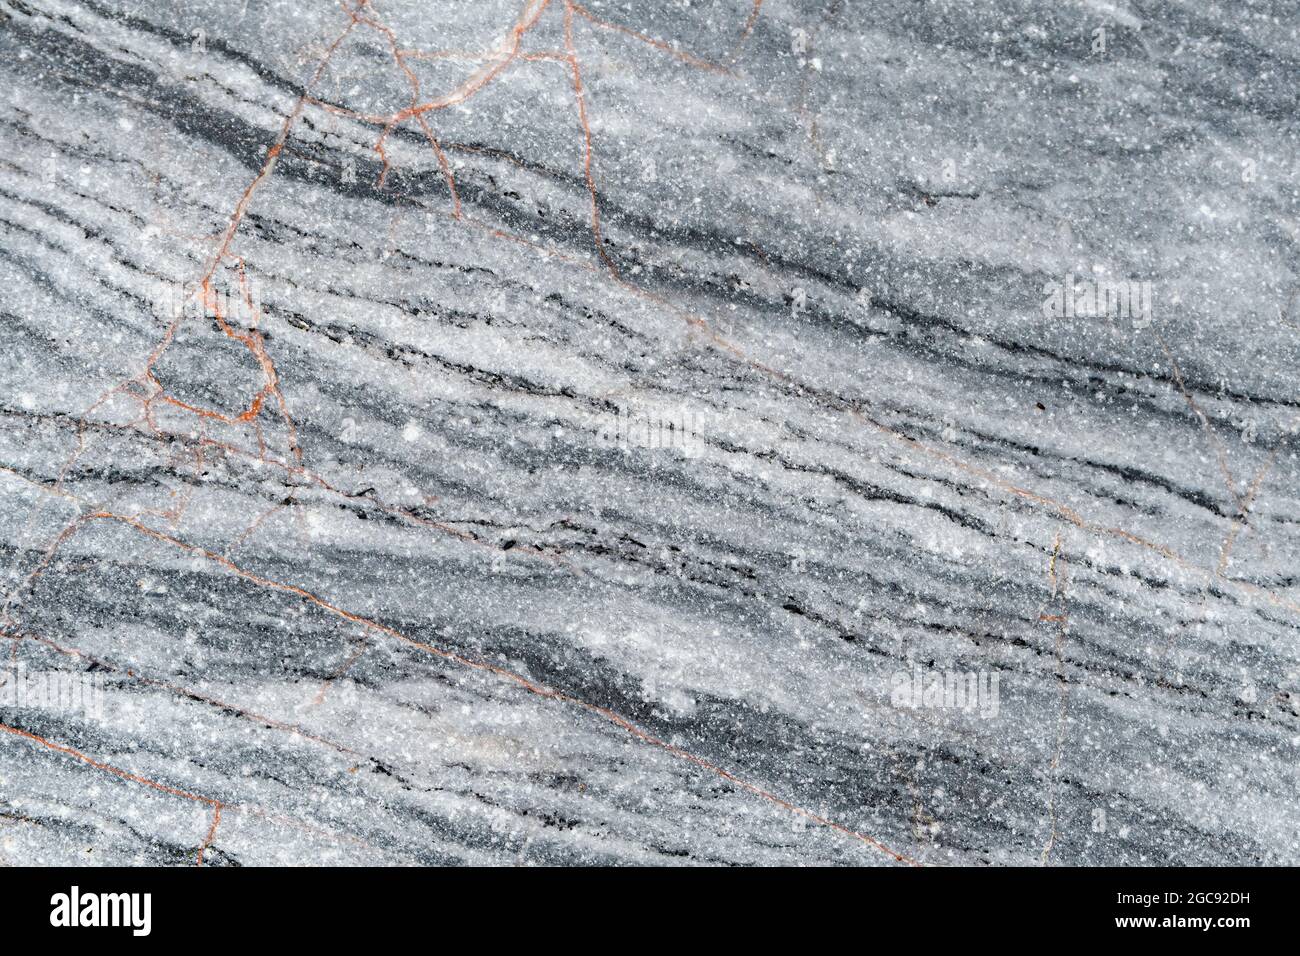 Un gros plan de roche calcaire naturelle. Détails très fins (ce n'est pas du bruit). Petites nervures orange rouillées. Banque D'Images